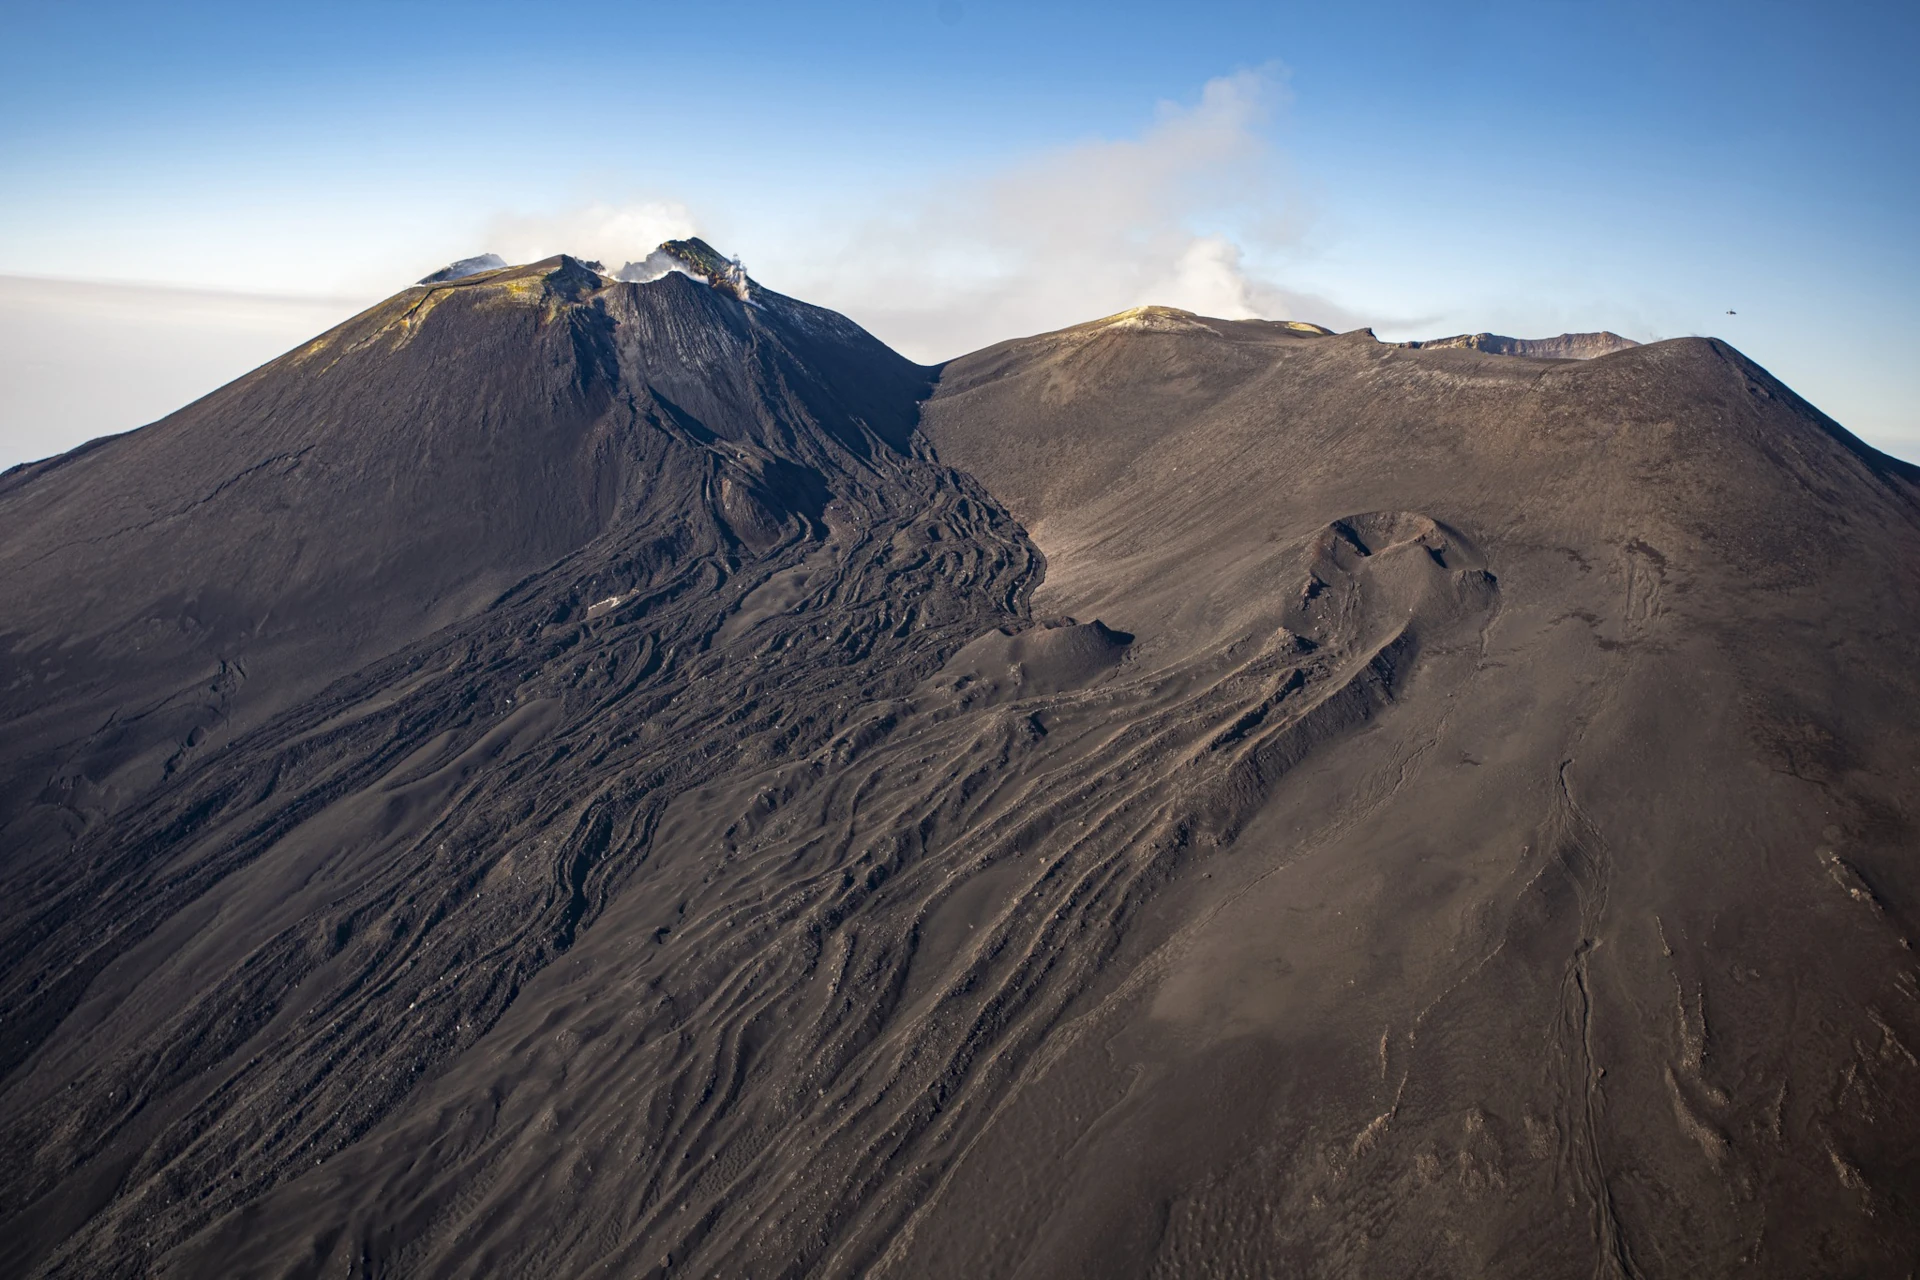 Sta recht voor de enorme hoofdkraters van de Etna tijdens onze Etna 3000 tour!